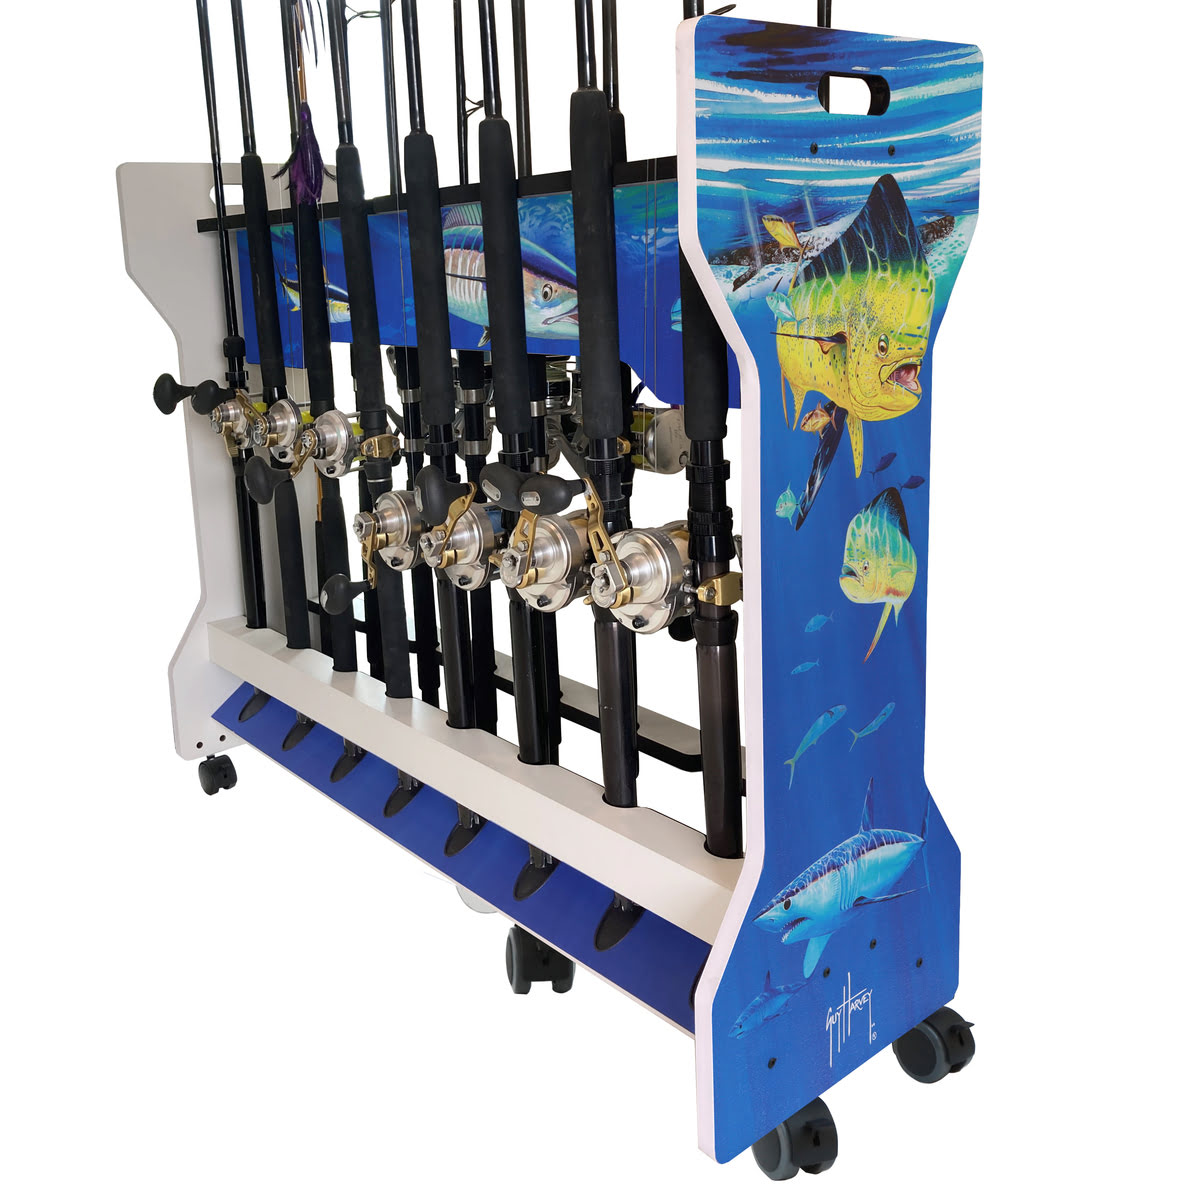 Fishing rod racks – Poseidon Racks